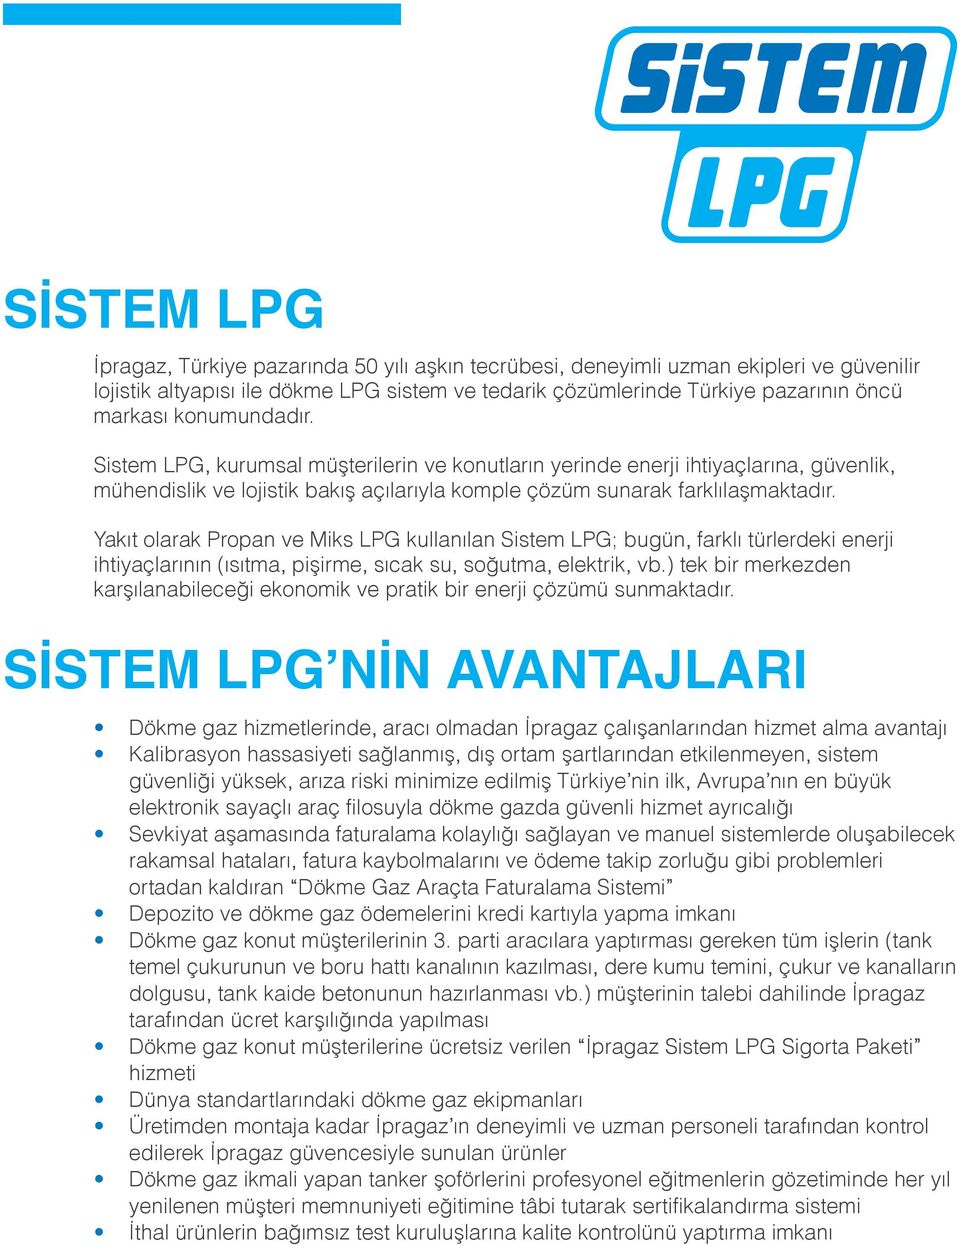 Yakıt olarak Propan ve Miks LPG kullanılan Sistem LPG; bugün, farklı türlerdeki enerji ihtiyaçlarının (ısıtma, pişirme, sıcak su, soğutma, elektrik, vb.